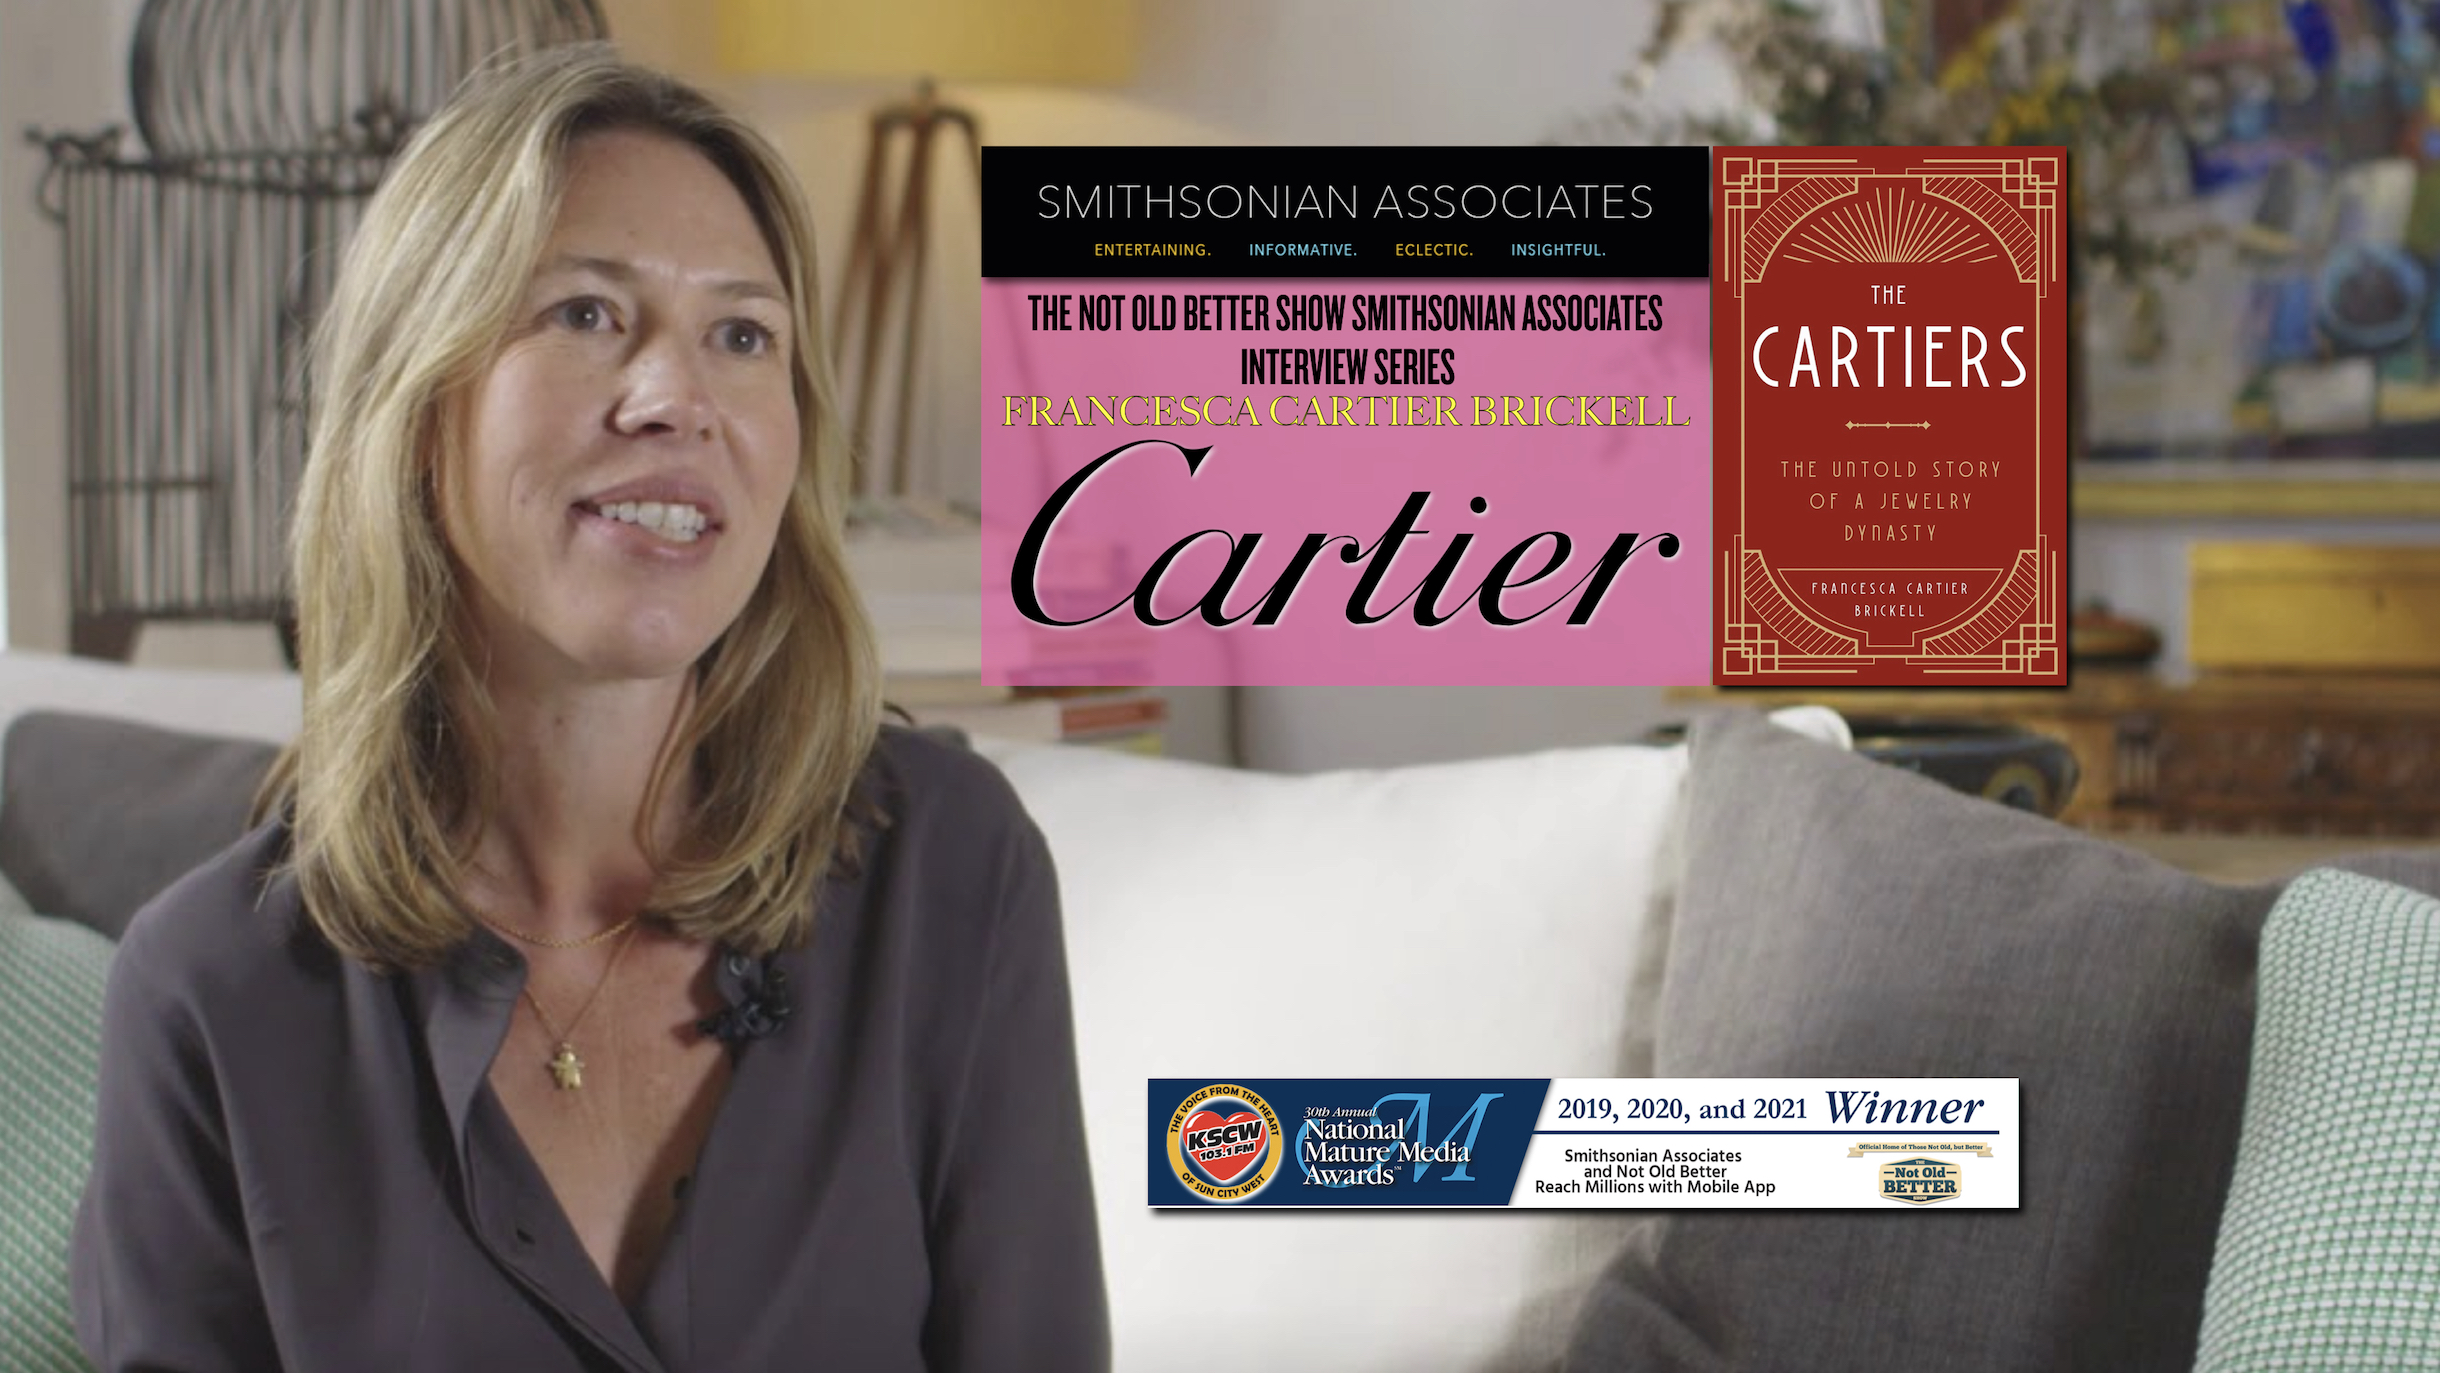 The Cartiers – Francesca Cartier Brickell